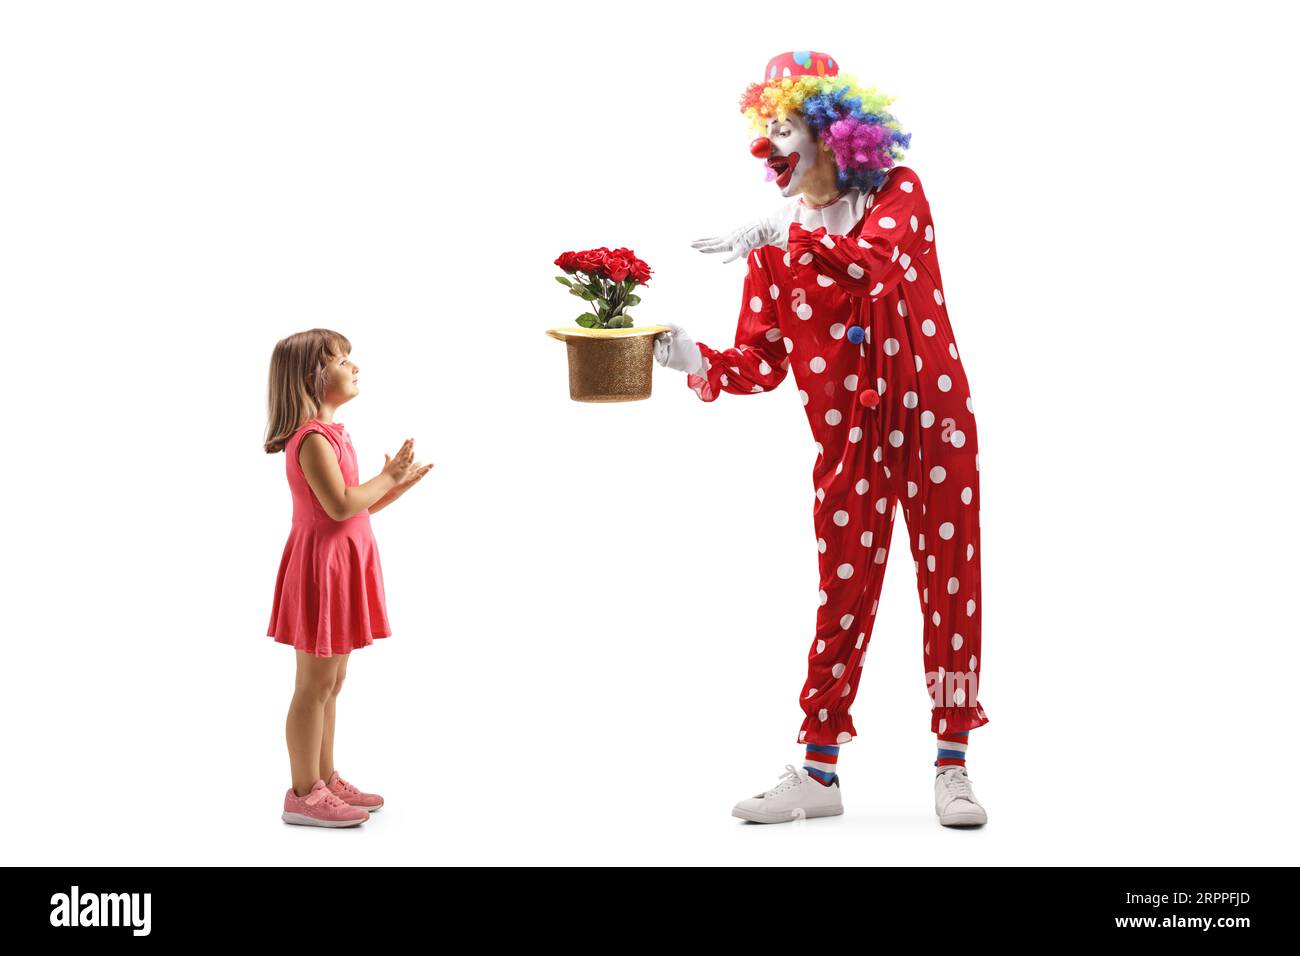 Profilaufnahme in voller Länge eines Mädchens, das einem Clown einen Zaubertrick auf weißem Hintergrund applaudiert Stockfoto